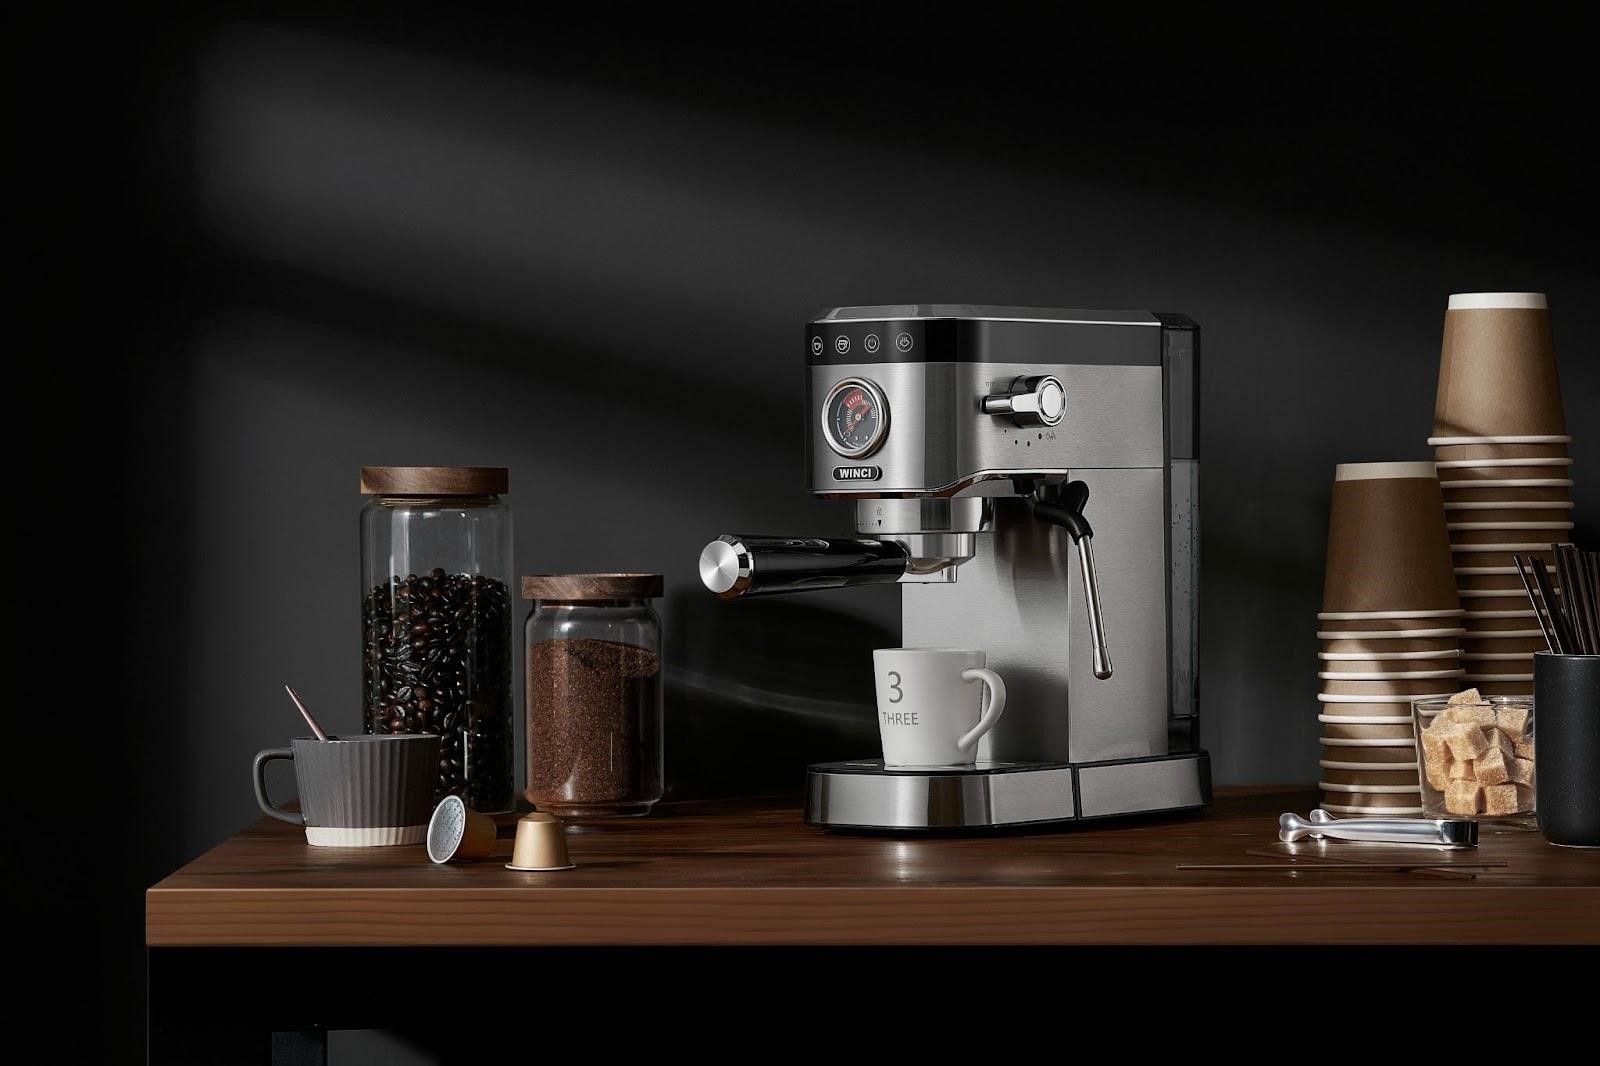 Trải nghiệm cà phê chất lượng cao với máy pha cà phê Winci - ảnh 3